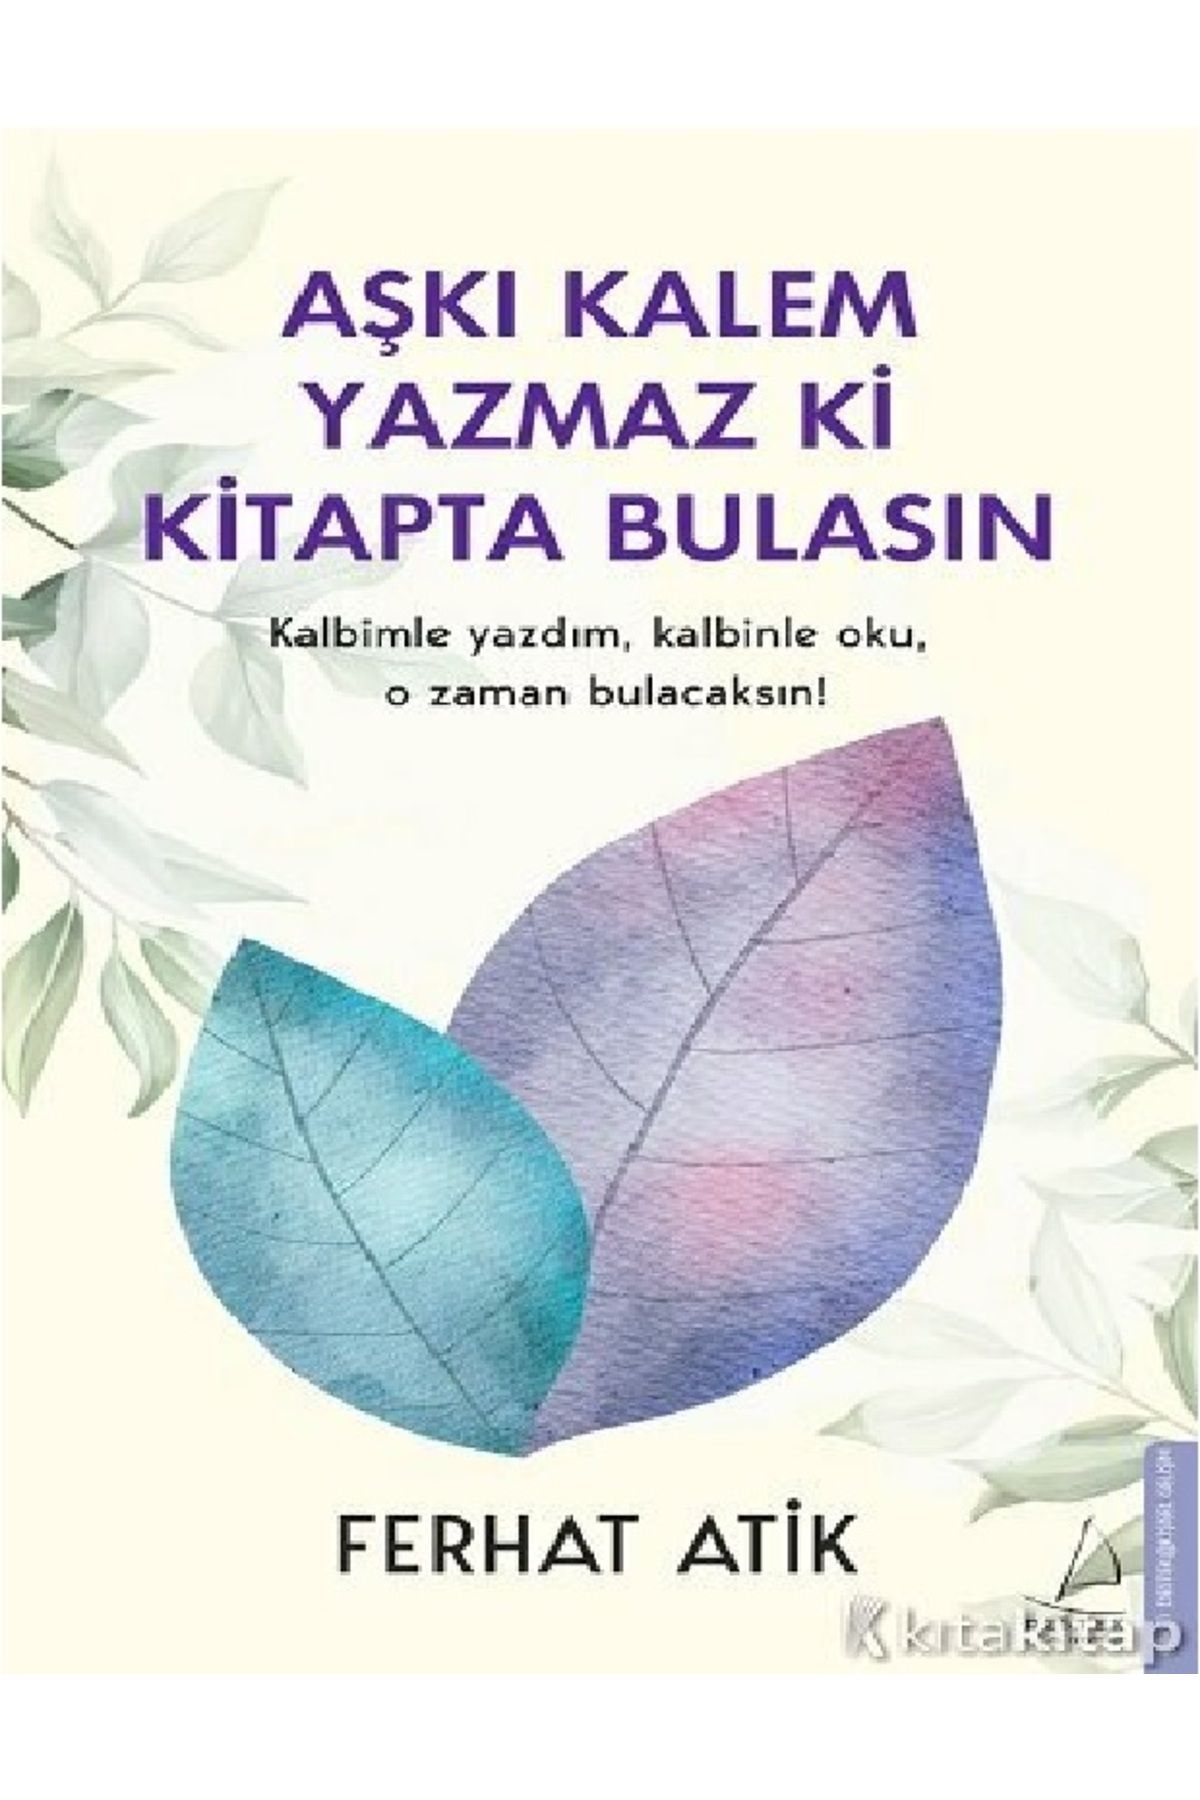 Destek Yayınları Aşkı Kalem Yazmaz ki Kitapta Bulasın kitabı - Ferhat Atik - Destek Yayınları